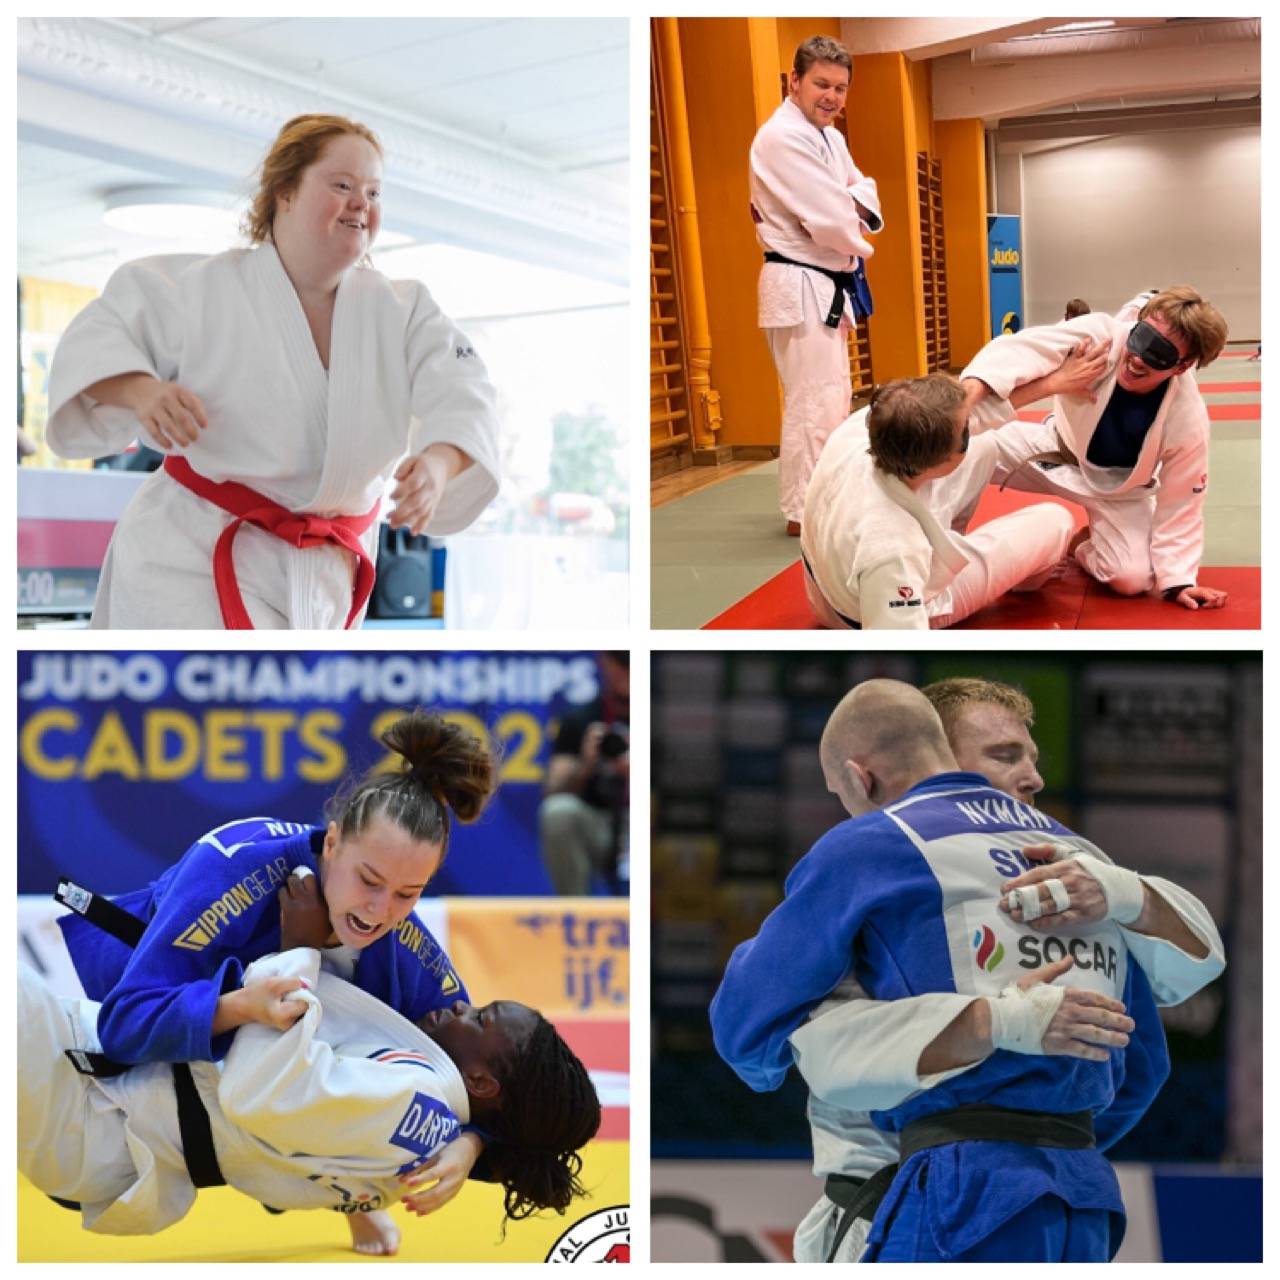 Fyra bilder. Bild 1: A-judo-utövare springer glatt över mattan. Bild 2: Två judoka med ögonbindel tränar judo. Ben Goodrich tittar på. Bild 3: Ingrid Nilsson kastar sin motståndare i mattan. Bild 4: Marcus Nyman kramar om sin motståndare.